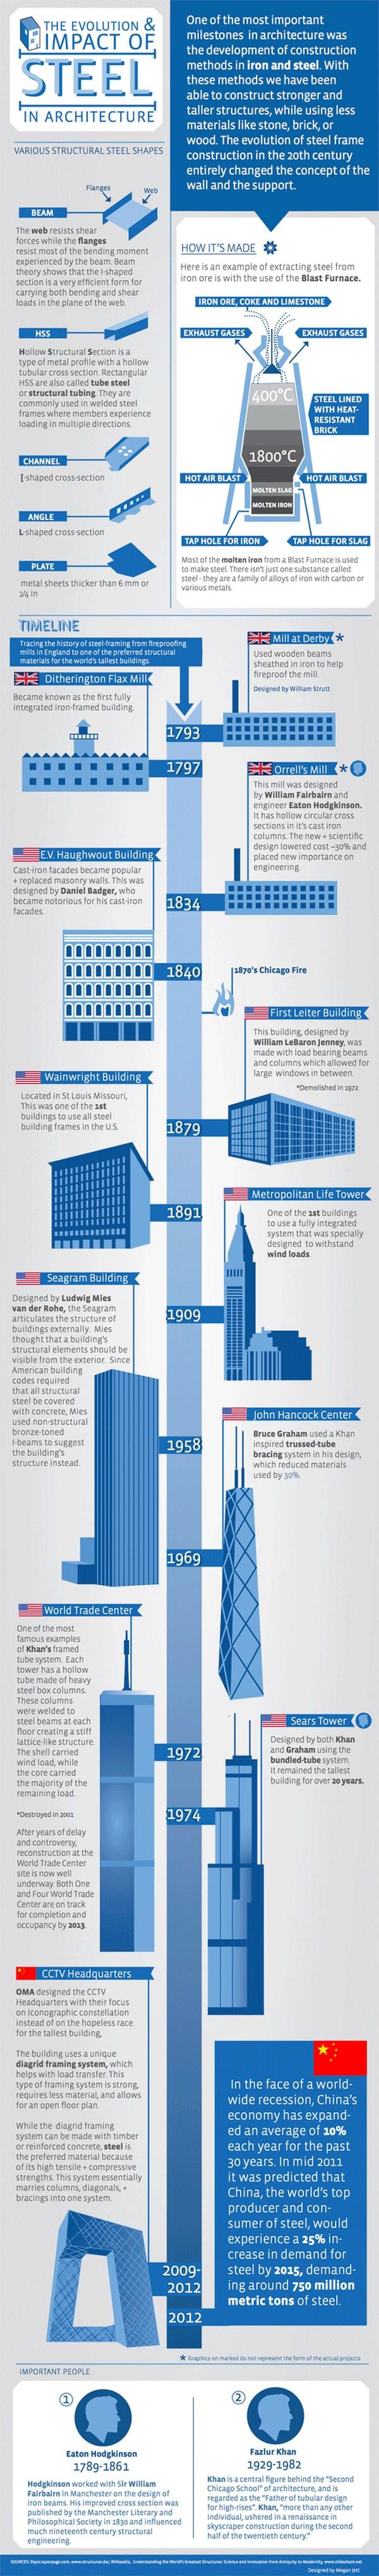 infografias de arquitectura